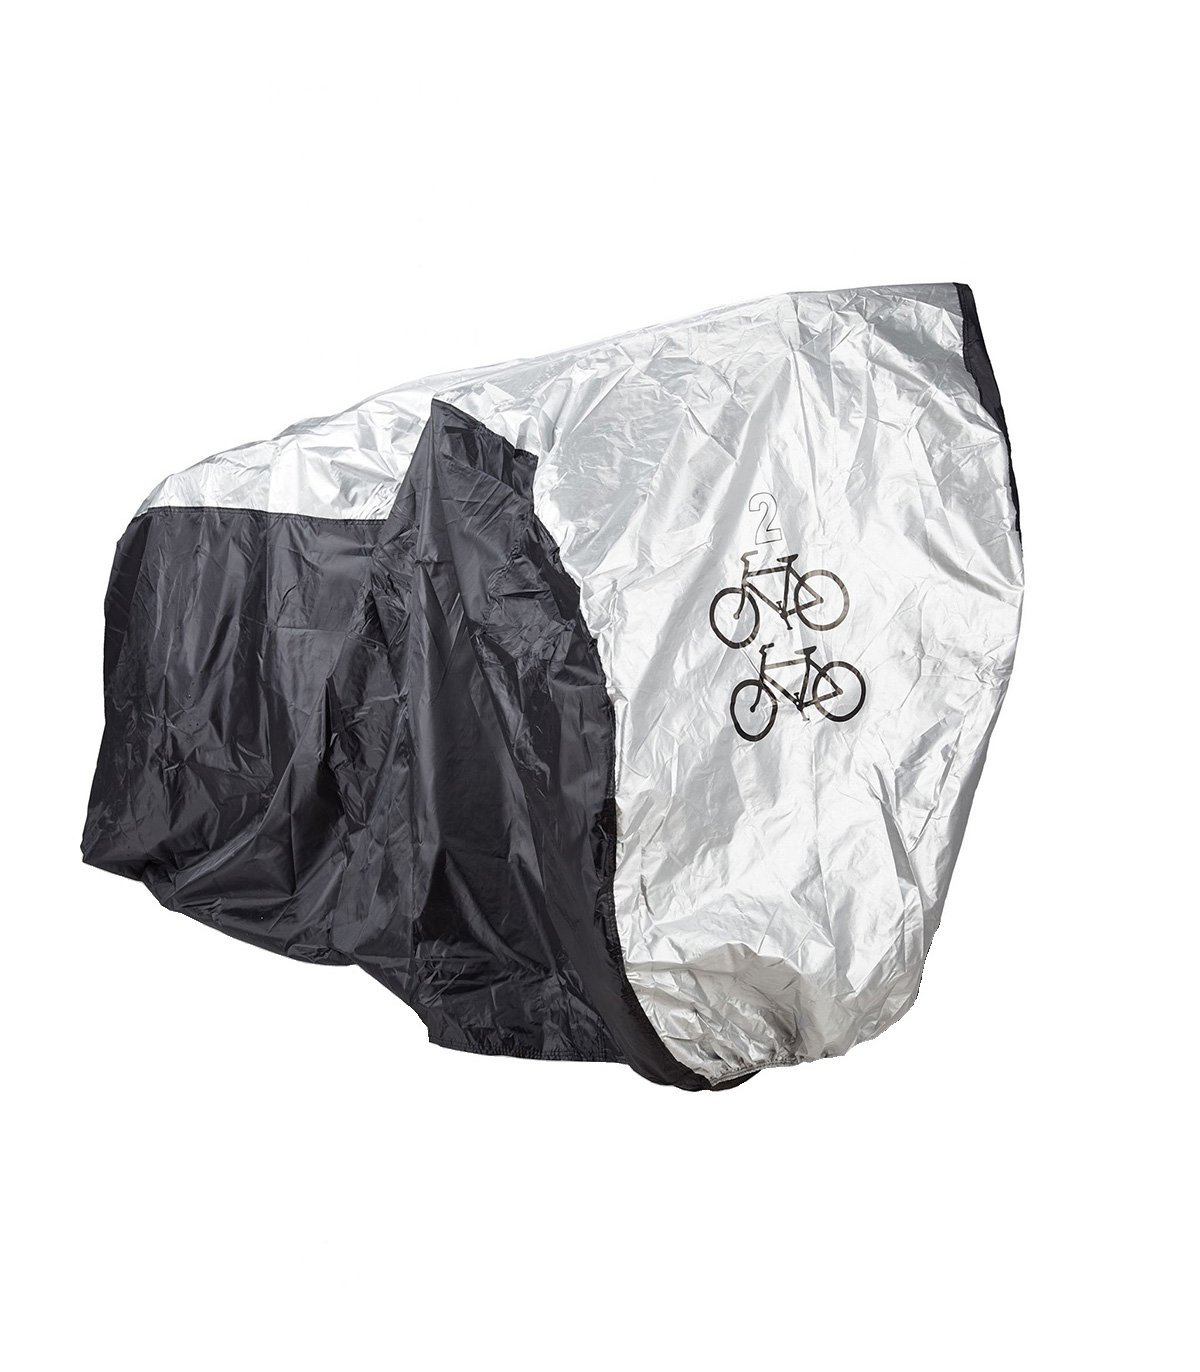 Husa protectie impermeabila, 2 biciclete, Negru/Argintiu biciclete